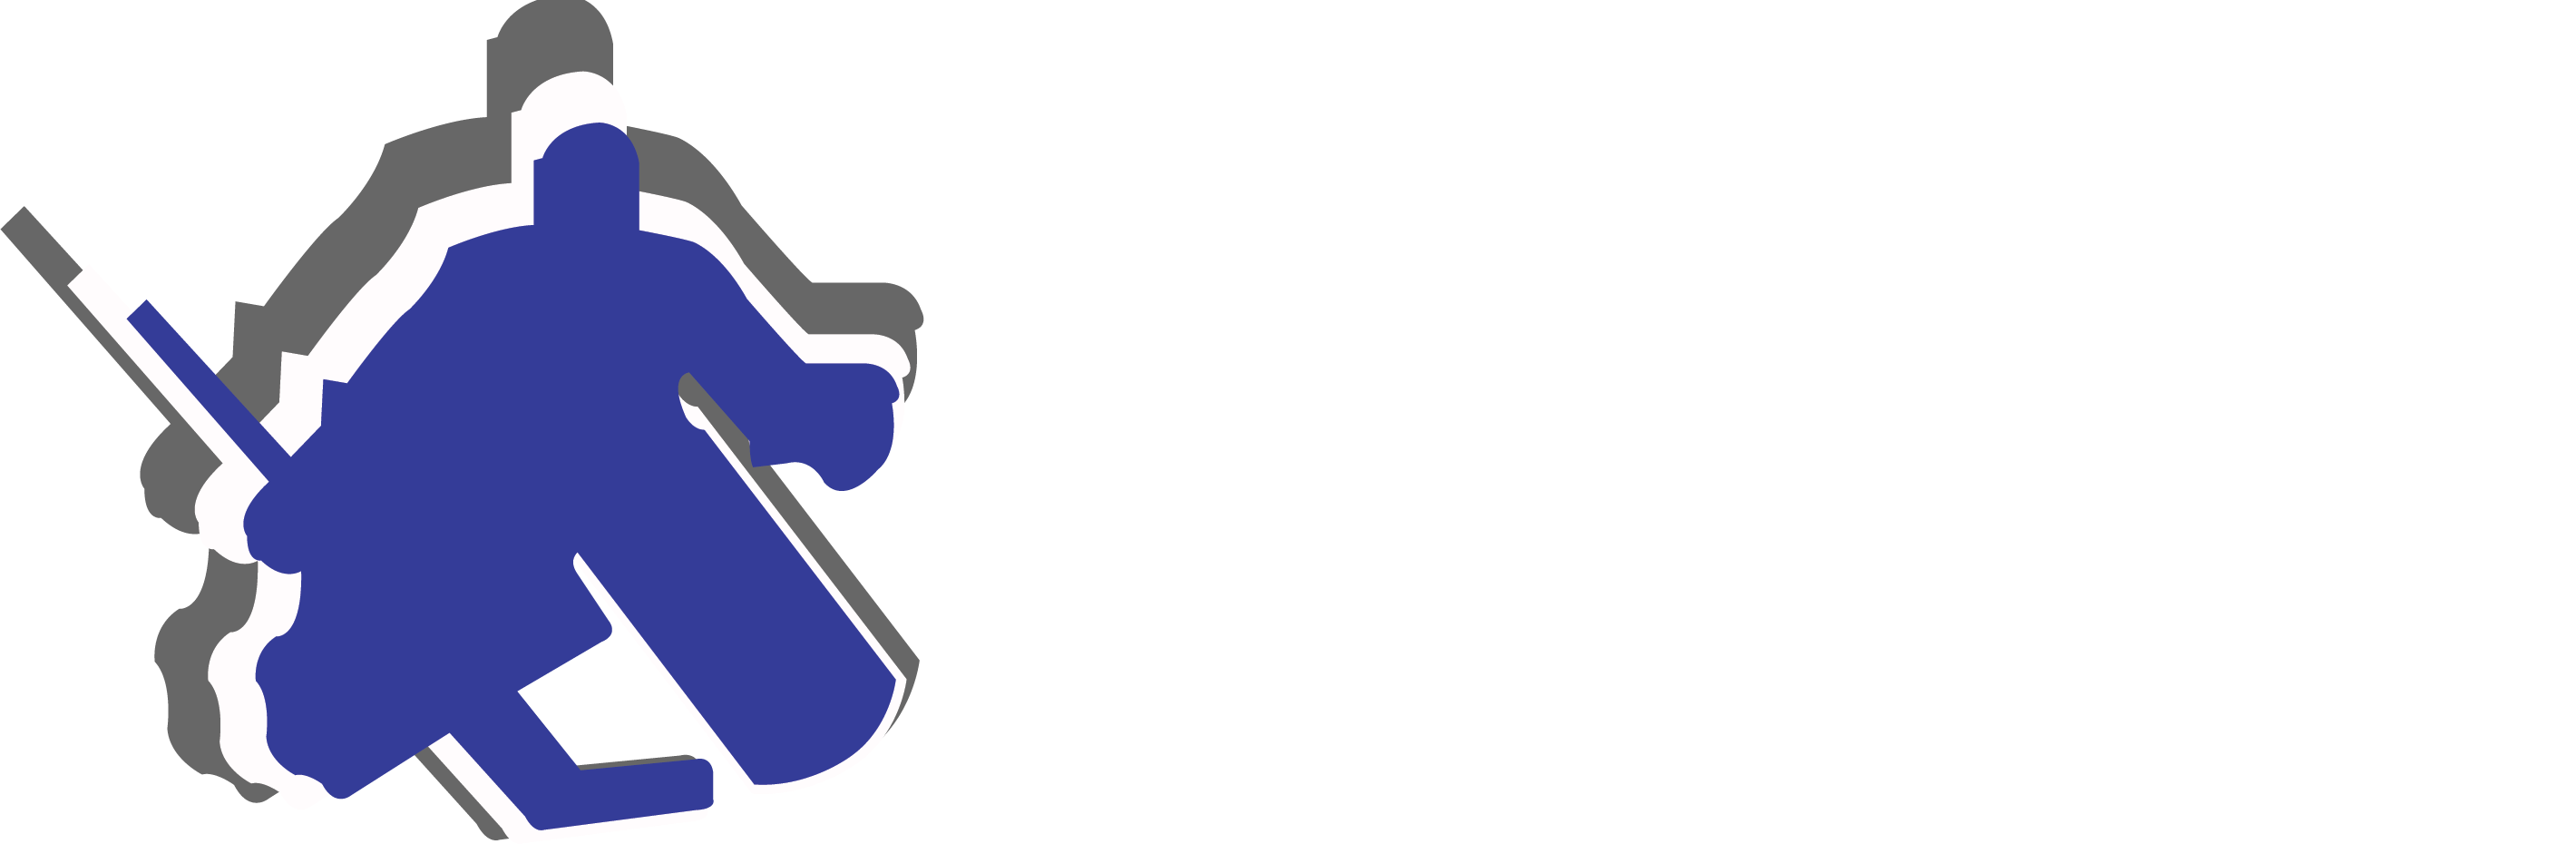 Pro Goaltending